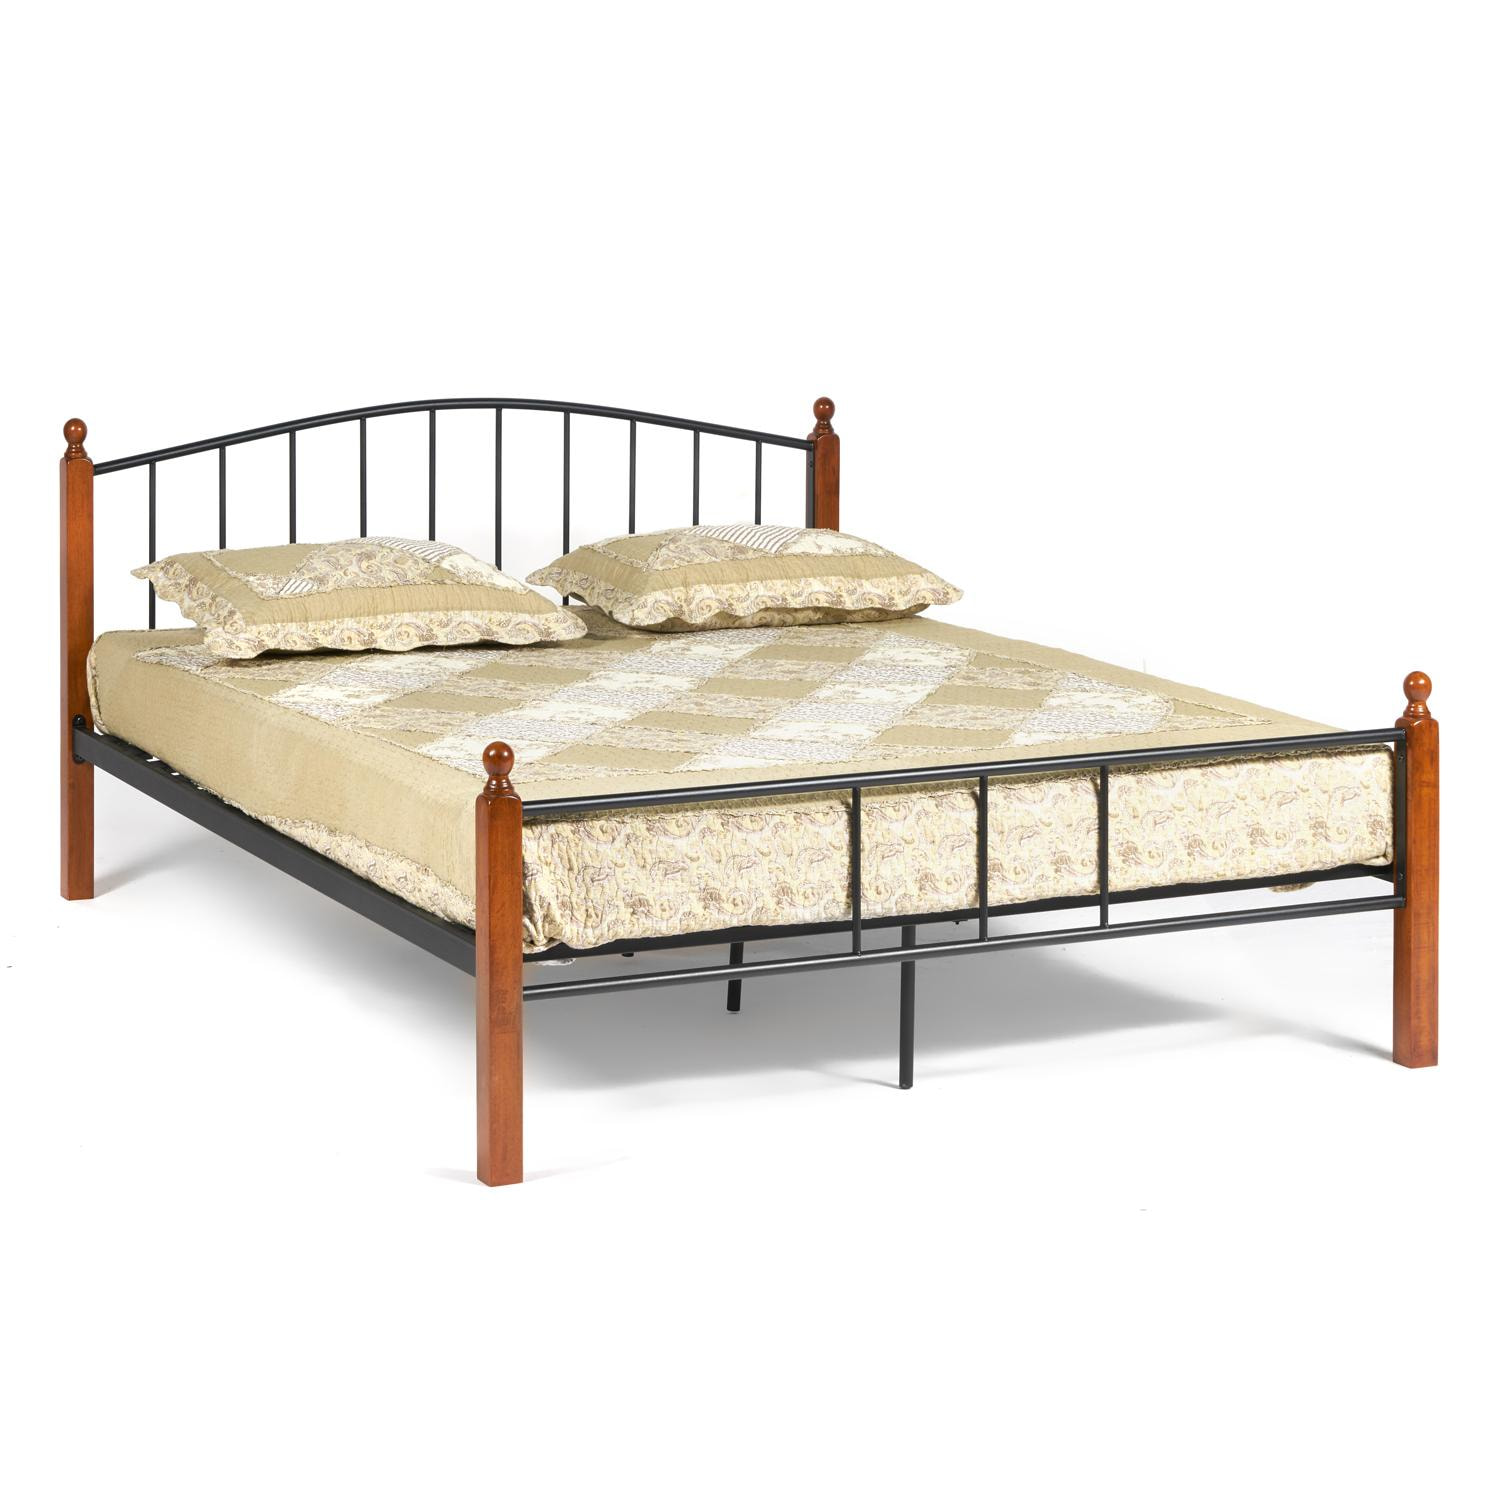 Кровать AT-915 Wood slat base дерево гевея/металл, 160*200 см (Queen bed), красный дуб/черный